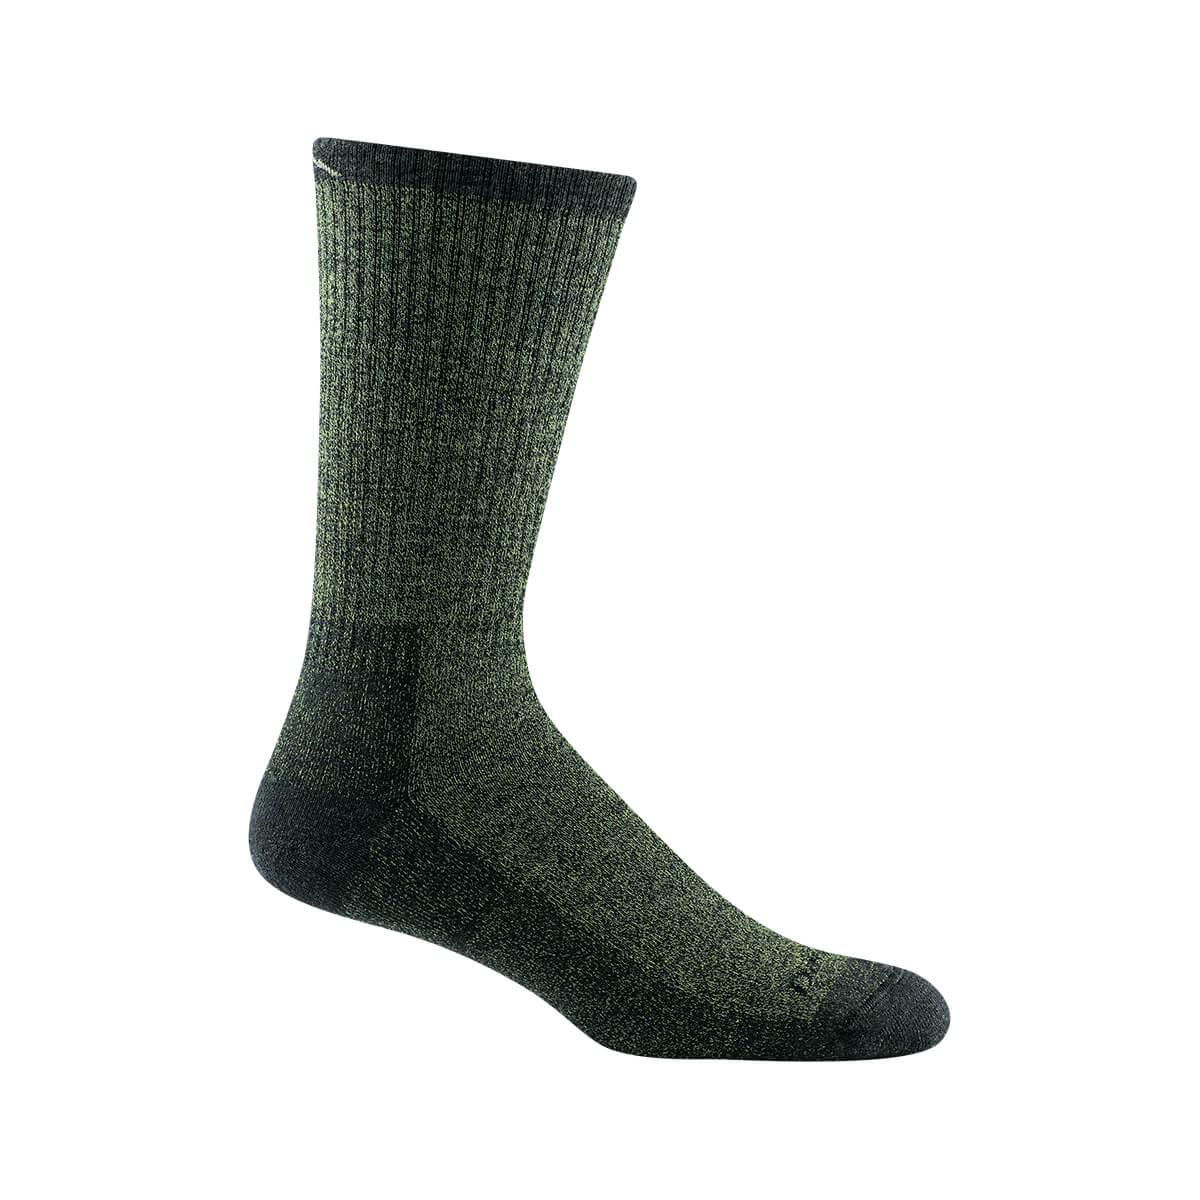  Men's Nomad Boot Full Cushion Socks